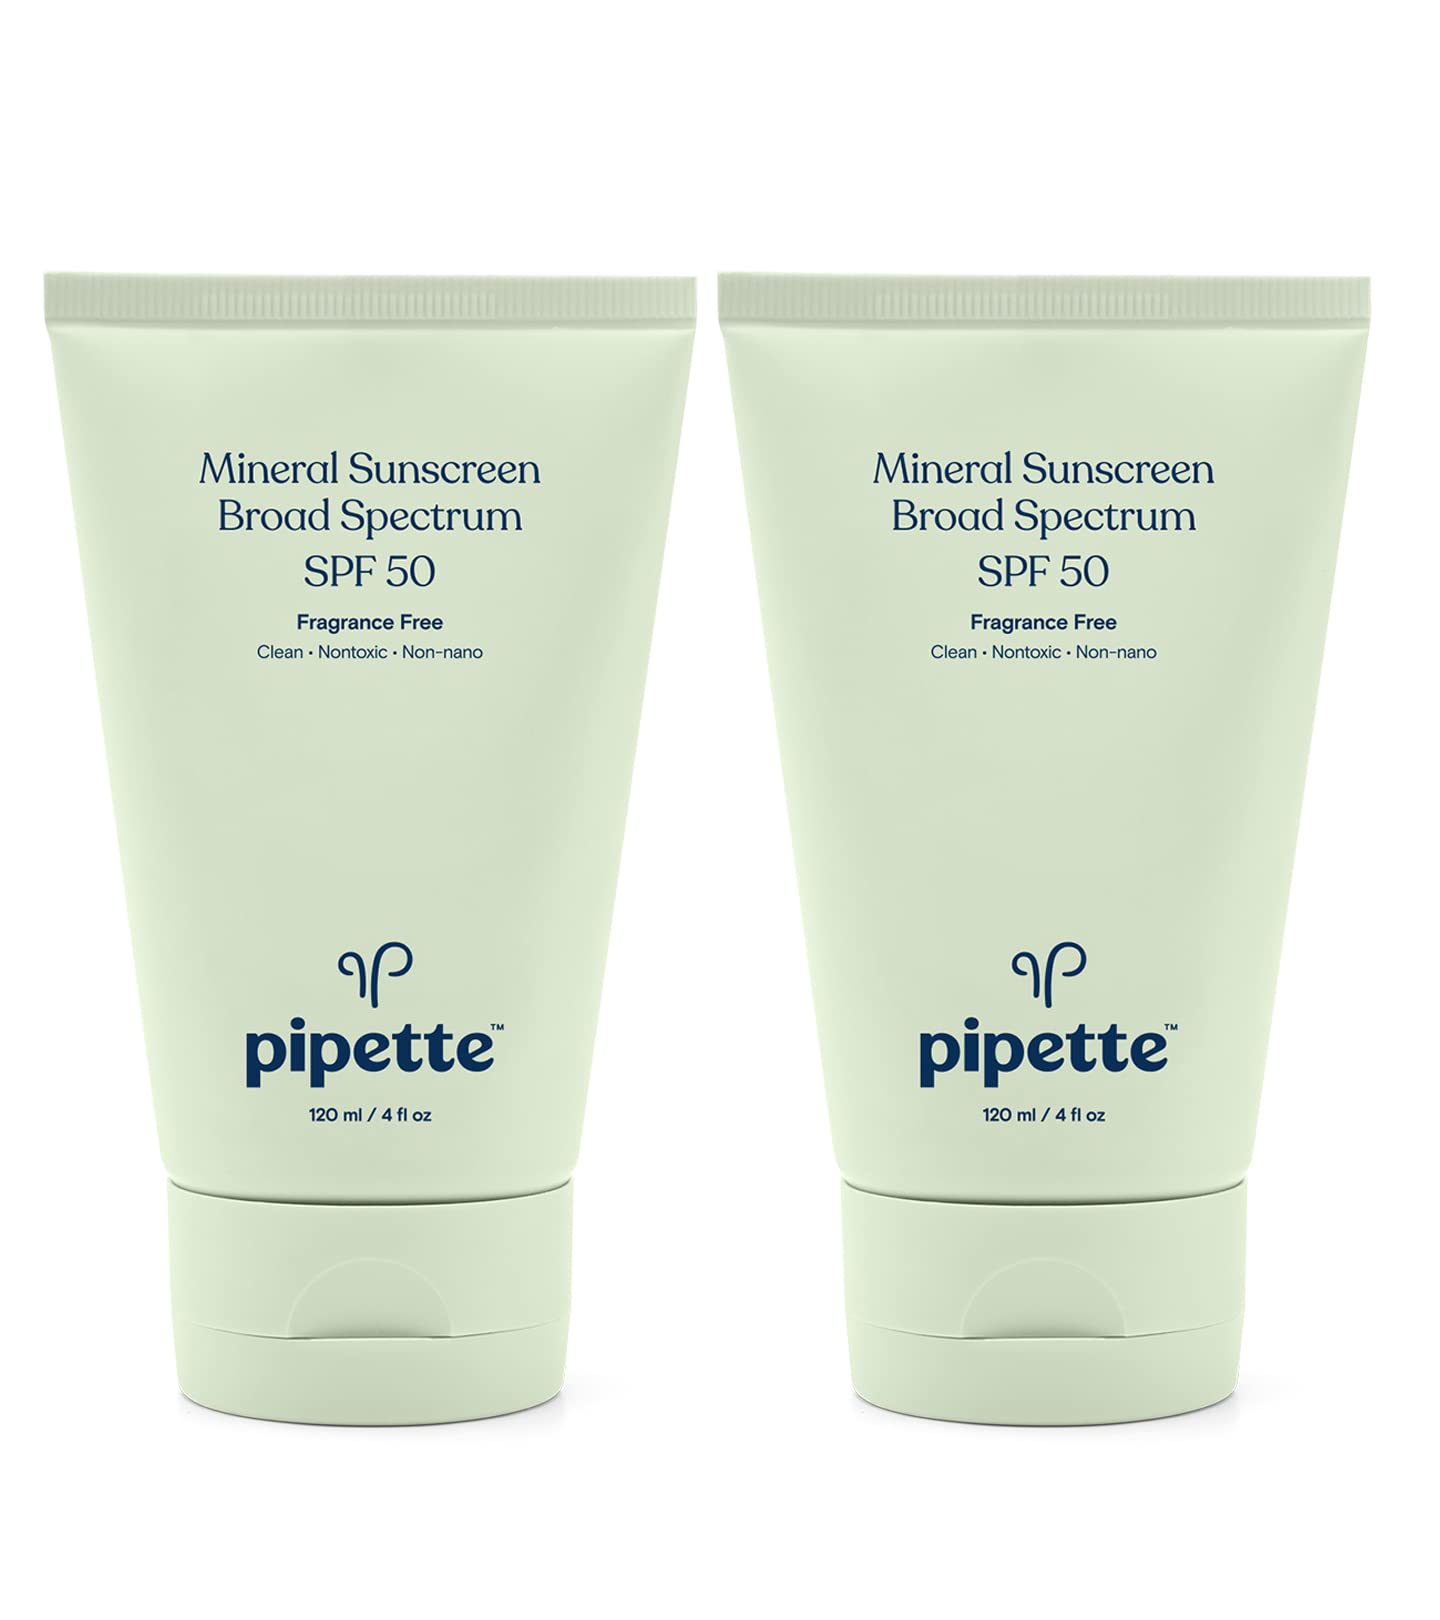 Pipette Mineral Sunscreen - SPF 50 Broad Spectrum Baby Sunblock with Non-Nano Zinc, UVB/UVA Non-Toxic Sun Protection for Kids & Sensitive Skin, 4fl oz (2 pack)